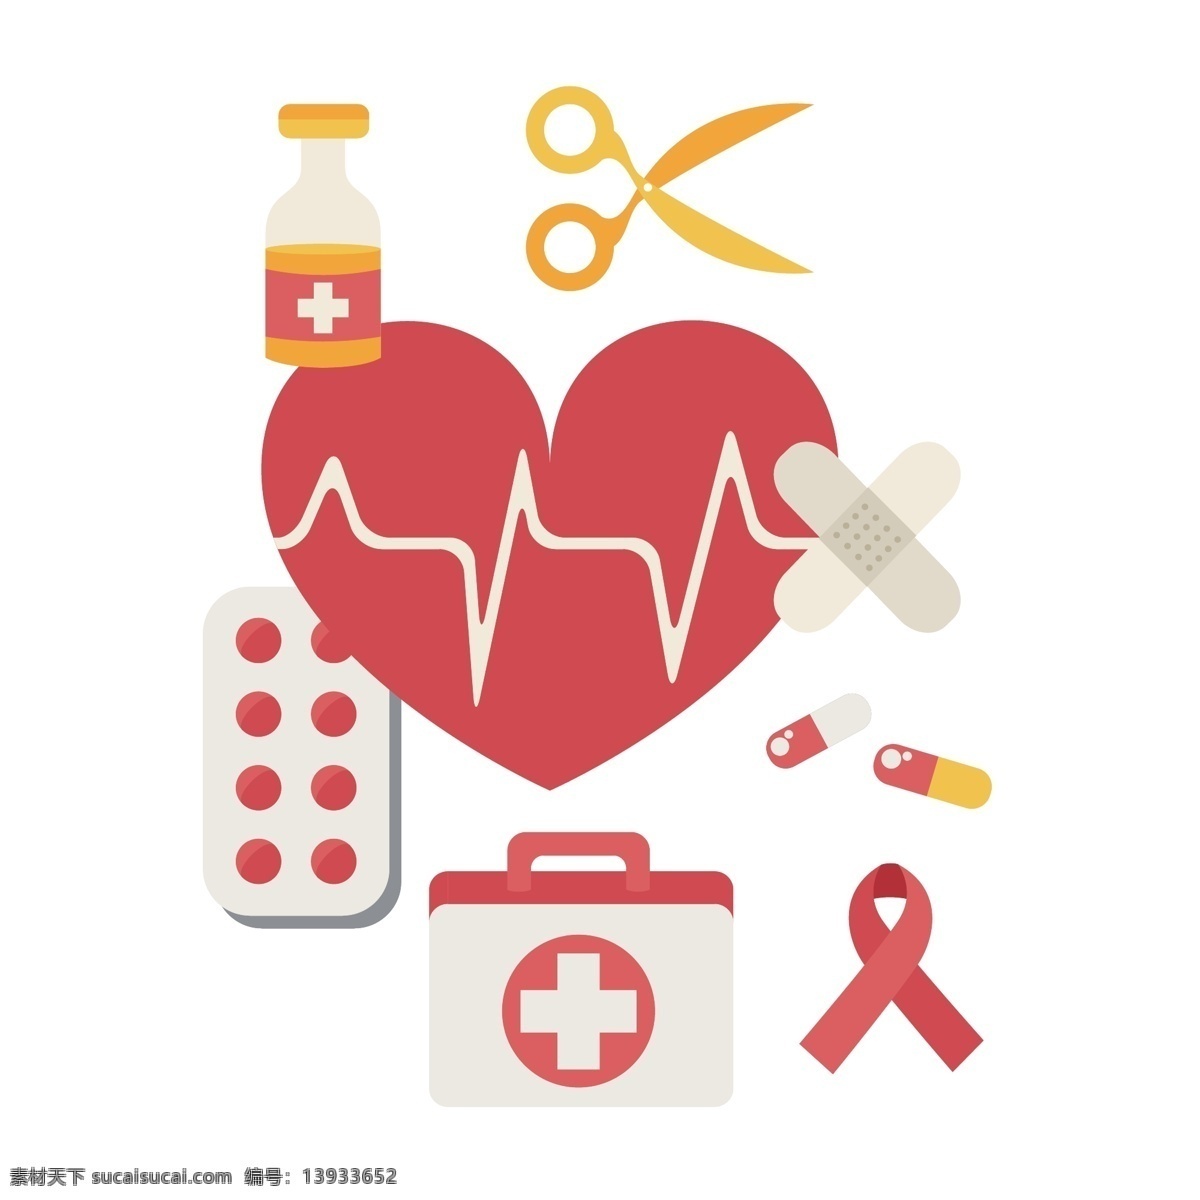 医学 符号 矢量 红十字 红十字的医生 医学符号 艾滋病 急救 急救药箱 药箱 心电图 剪刀 药品